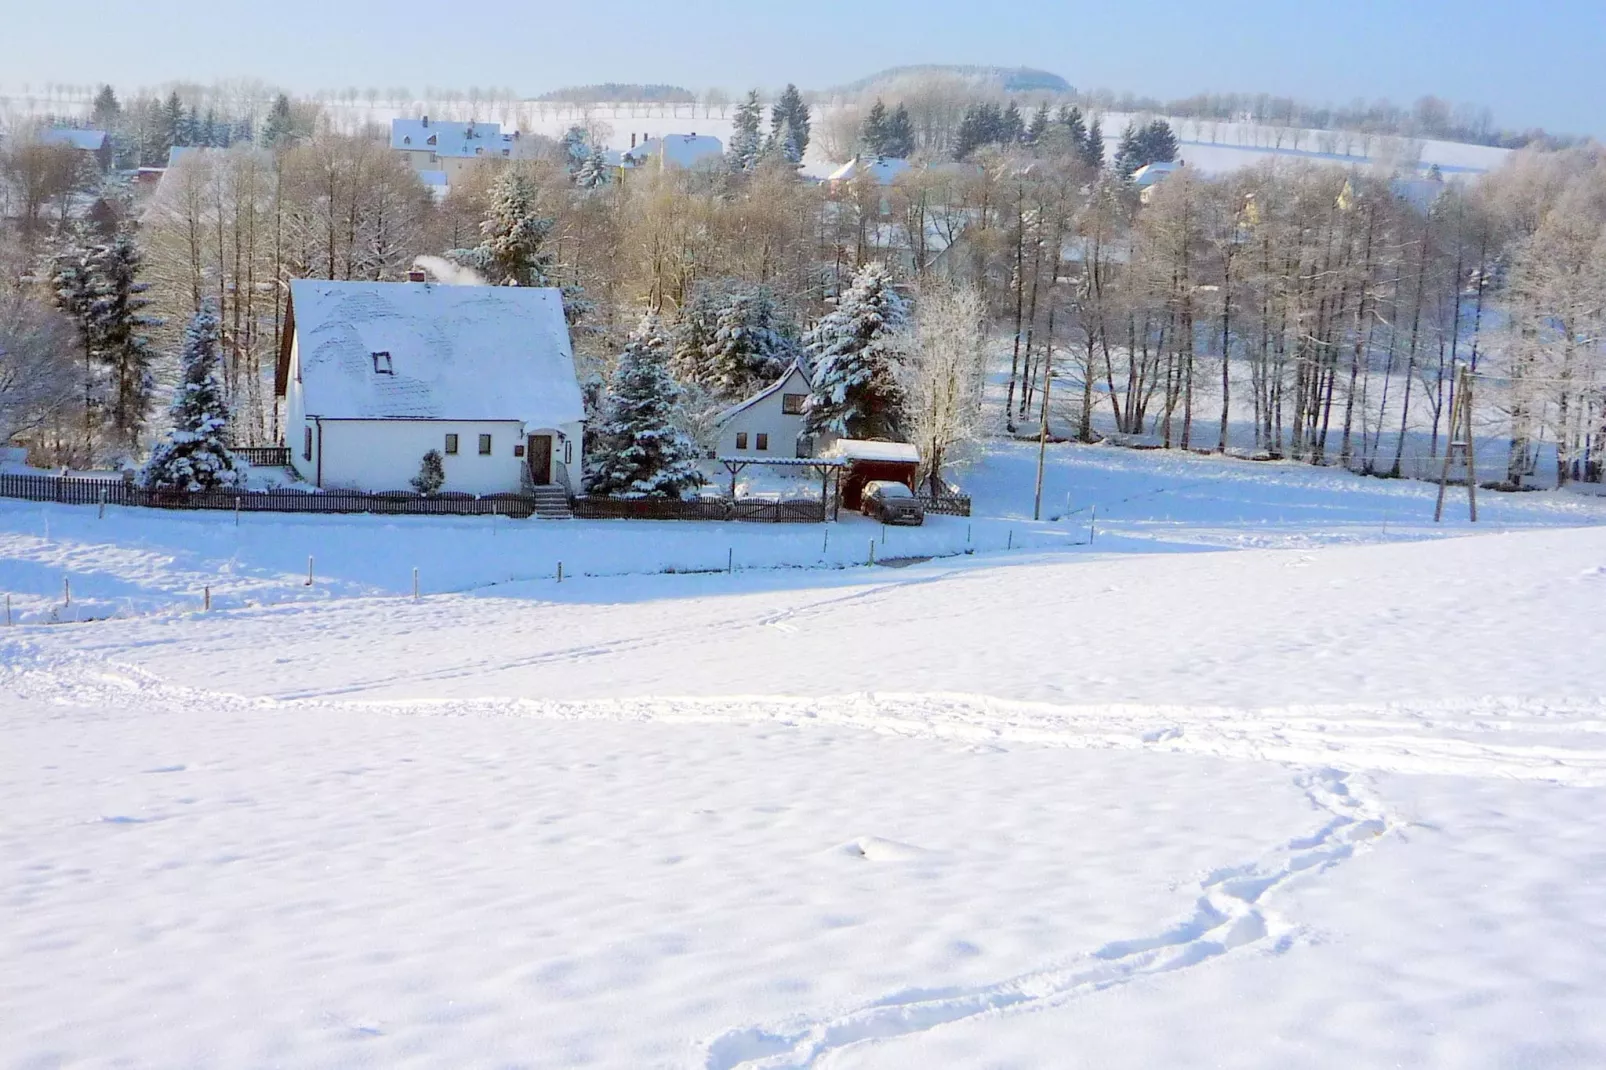 Ferienhaus im Erzgebirge-Gebied winter 1km